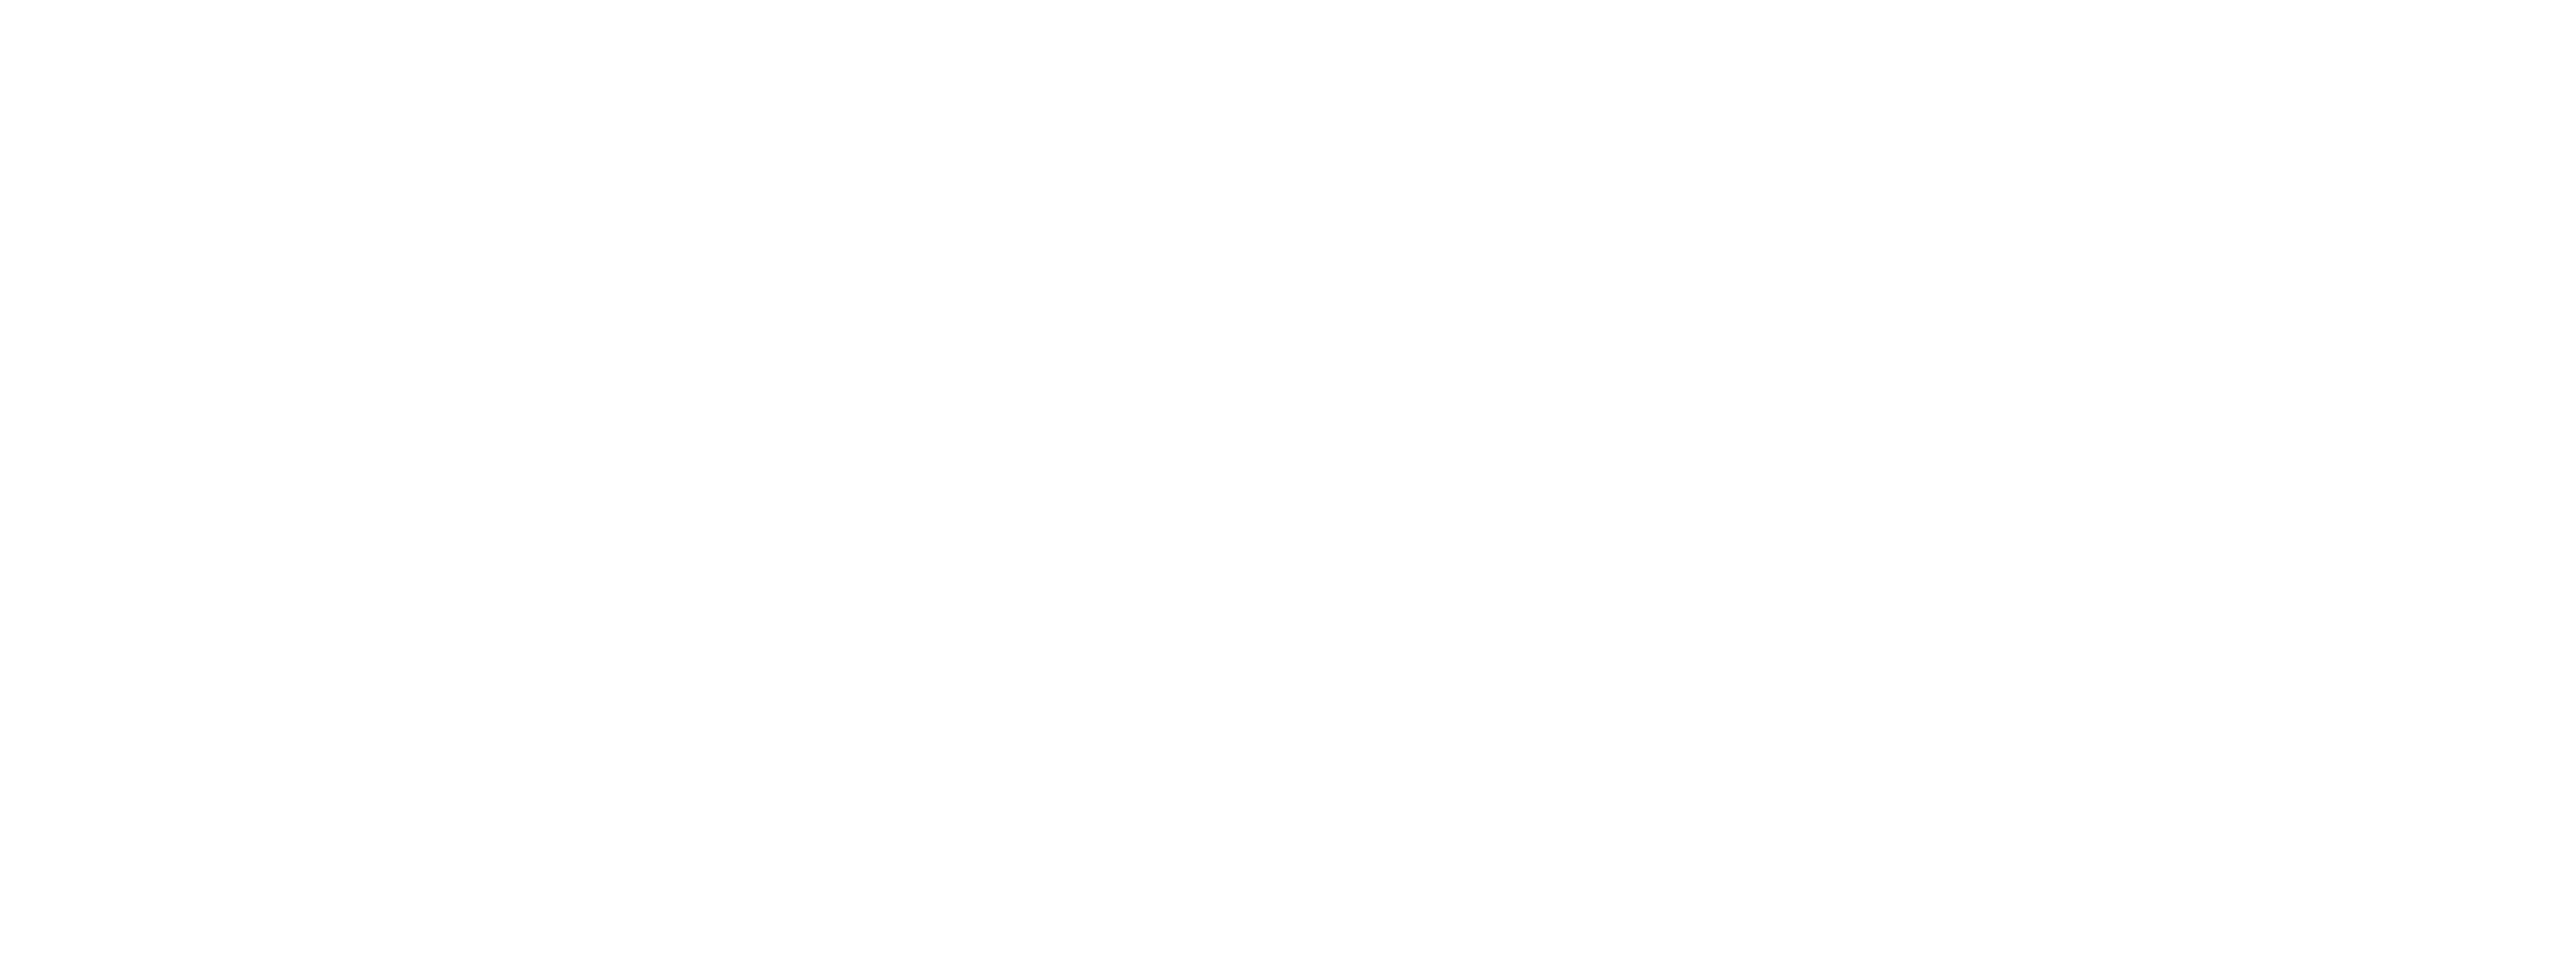 Open Integration Hub